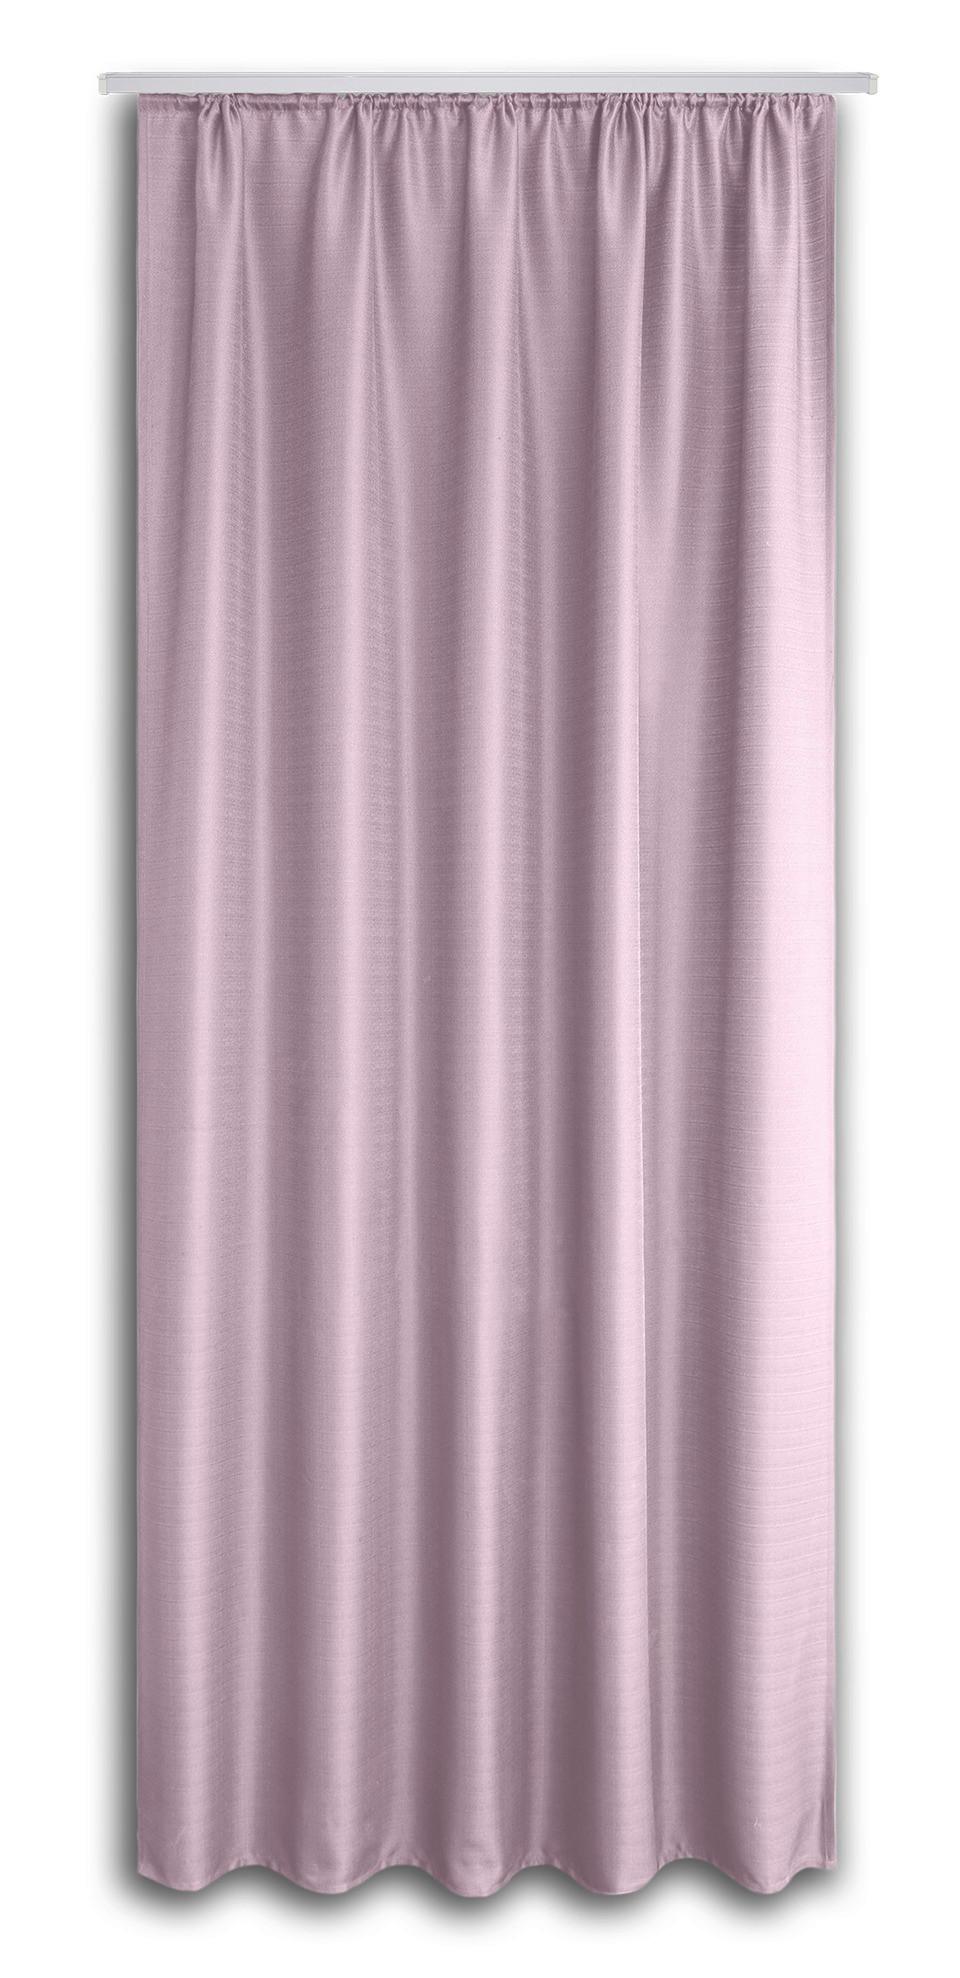 Vorhang mit Band Ben II 135x245 cm Rosa - Rosa, KONVENTIONELL, Textil (135/245cm) - Ondega